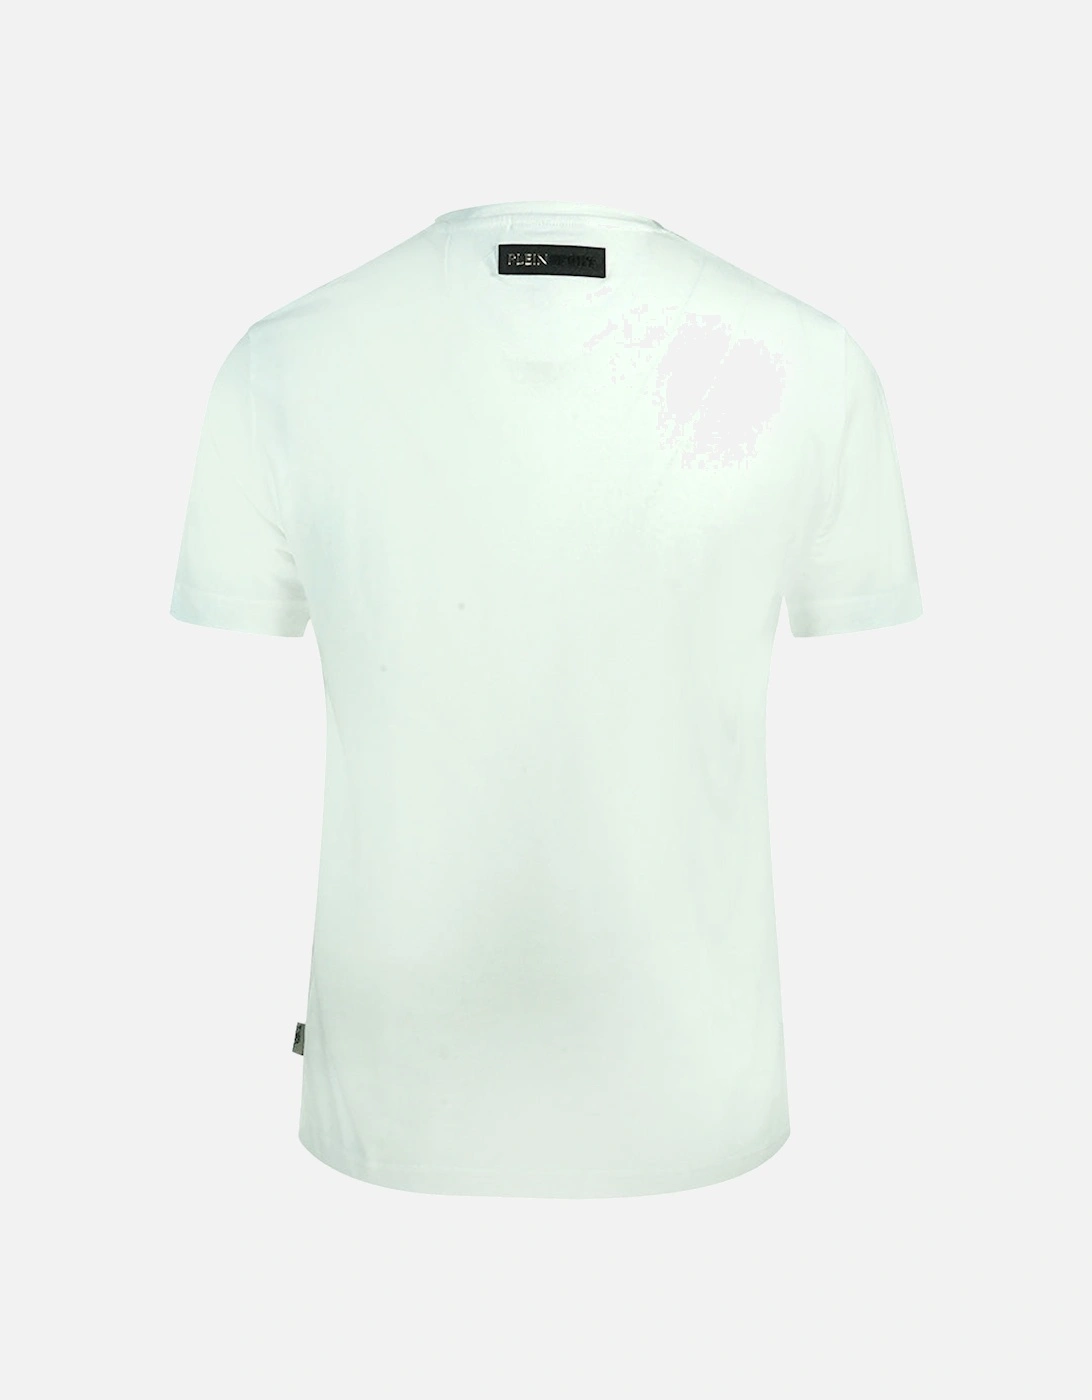 Plein Sport Signature White T-Shirt